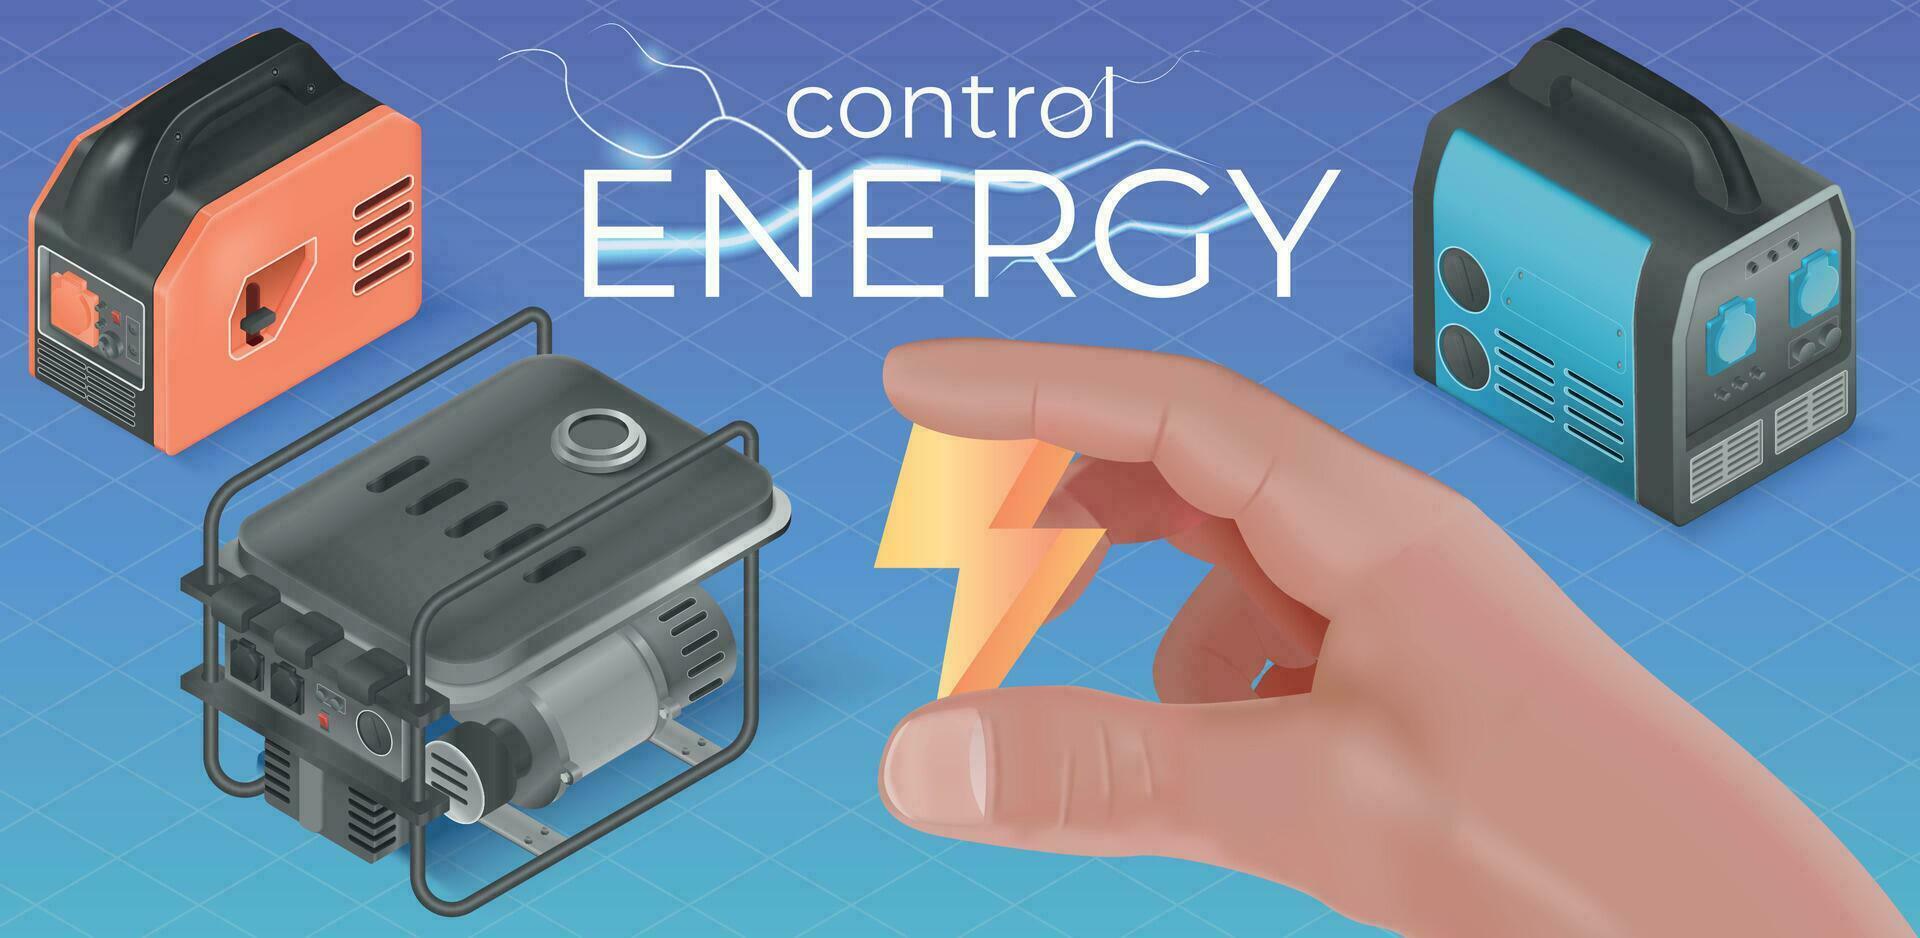 energie controle realistisch samenstelling vector